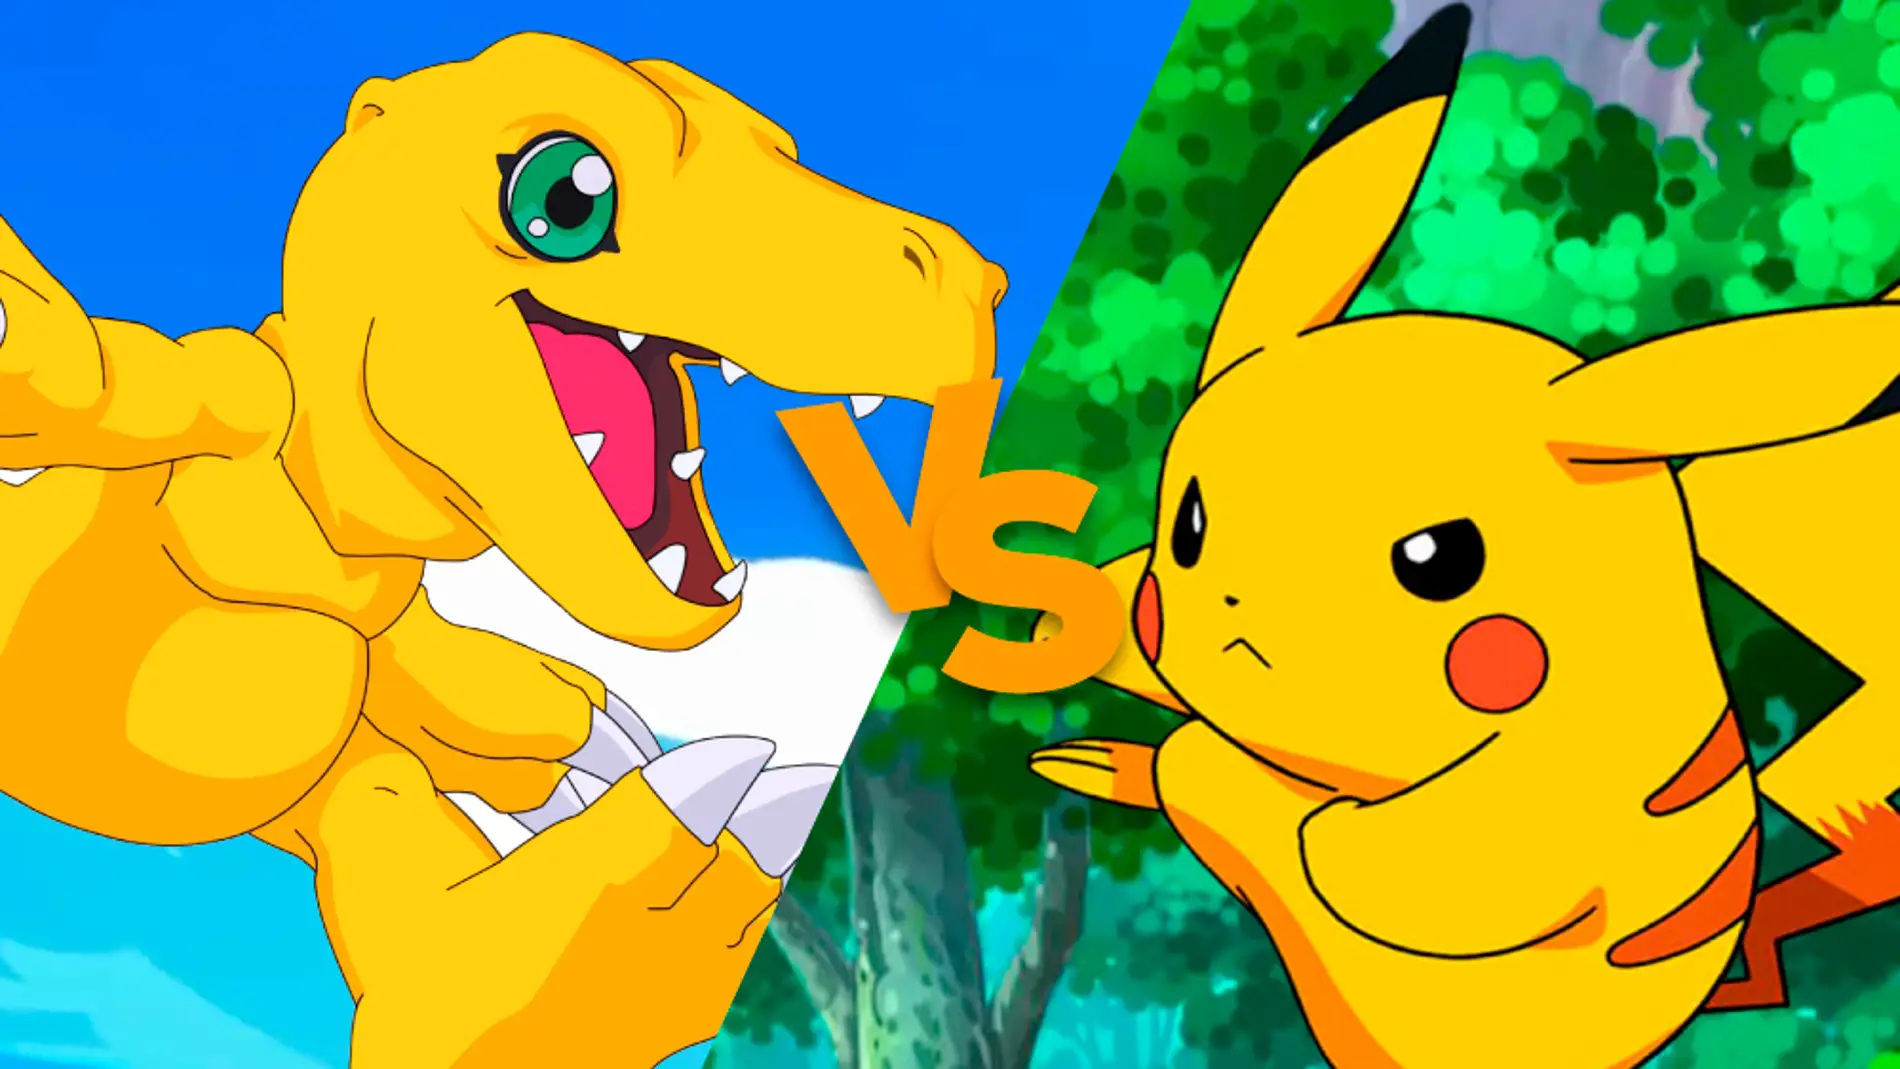 Agumon vs Pikachu